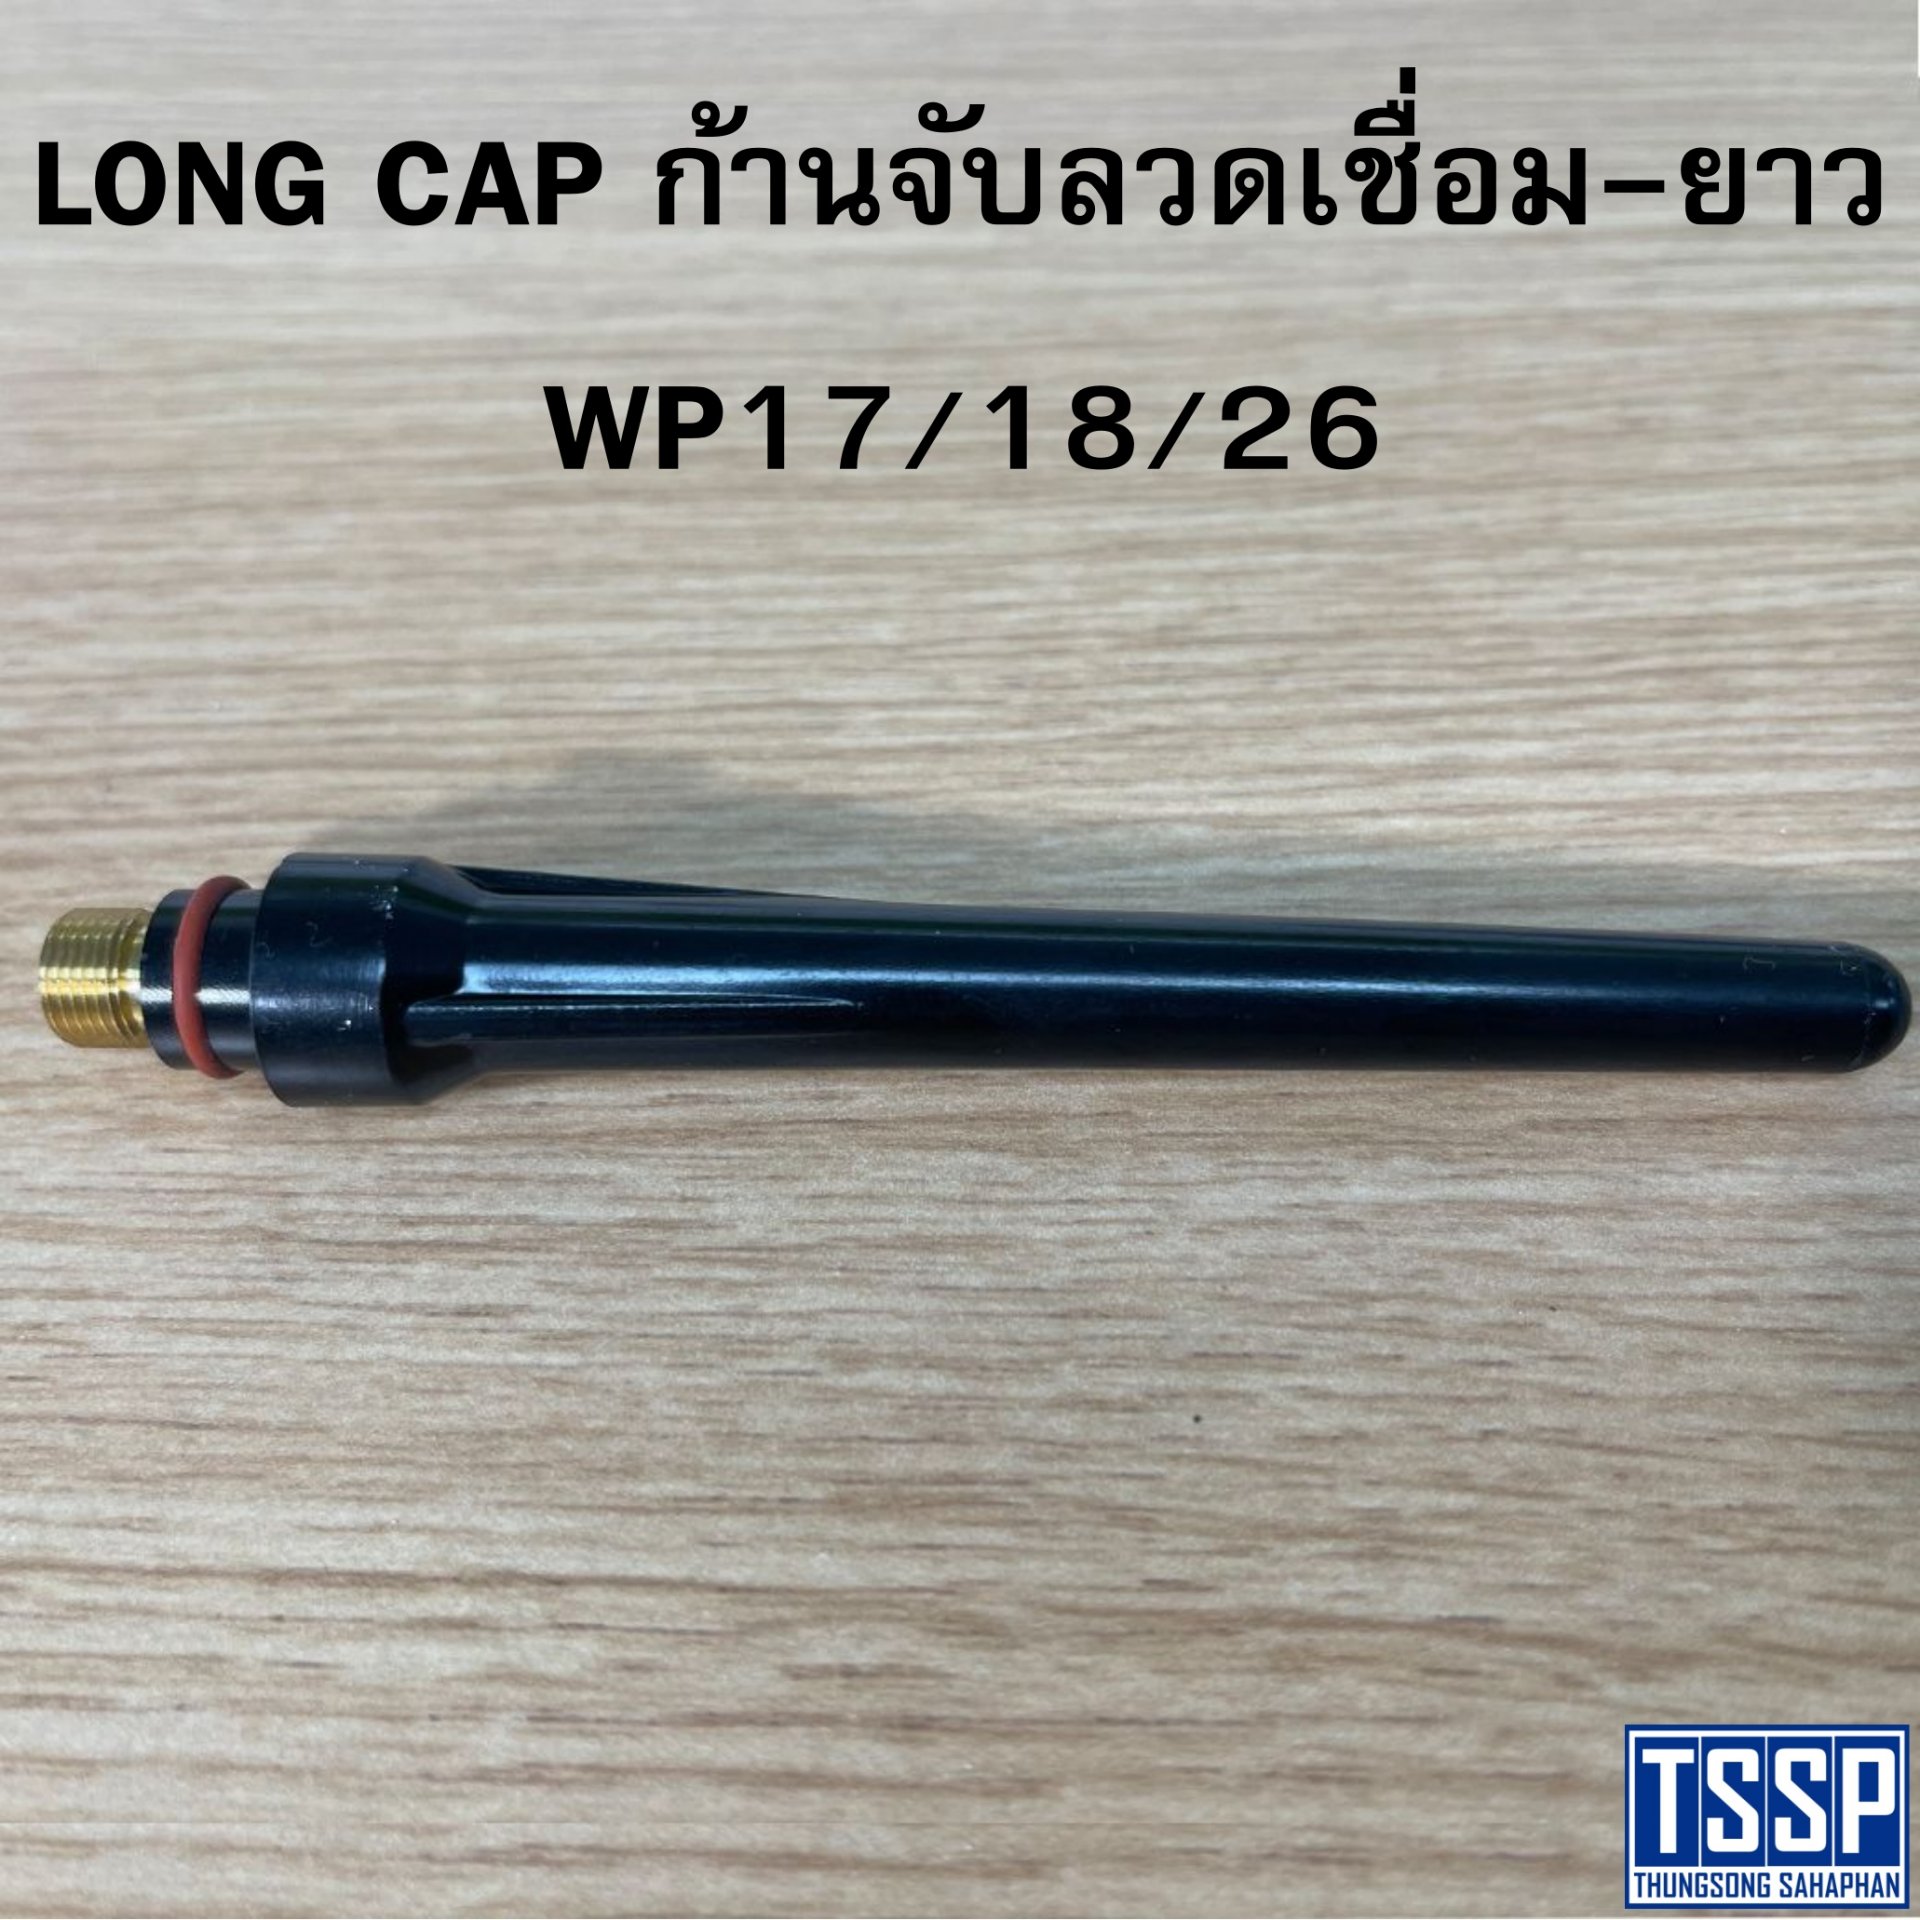 LONG CAP ก้านจับลวดเชื่อม-ยาว WP17/18/26